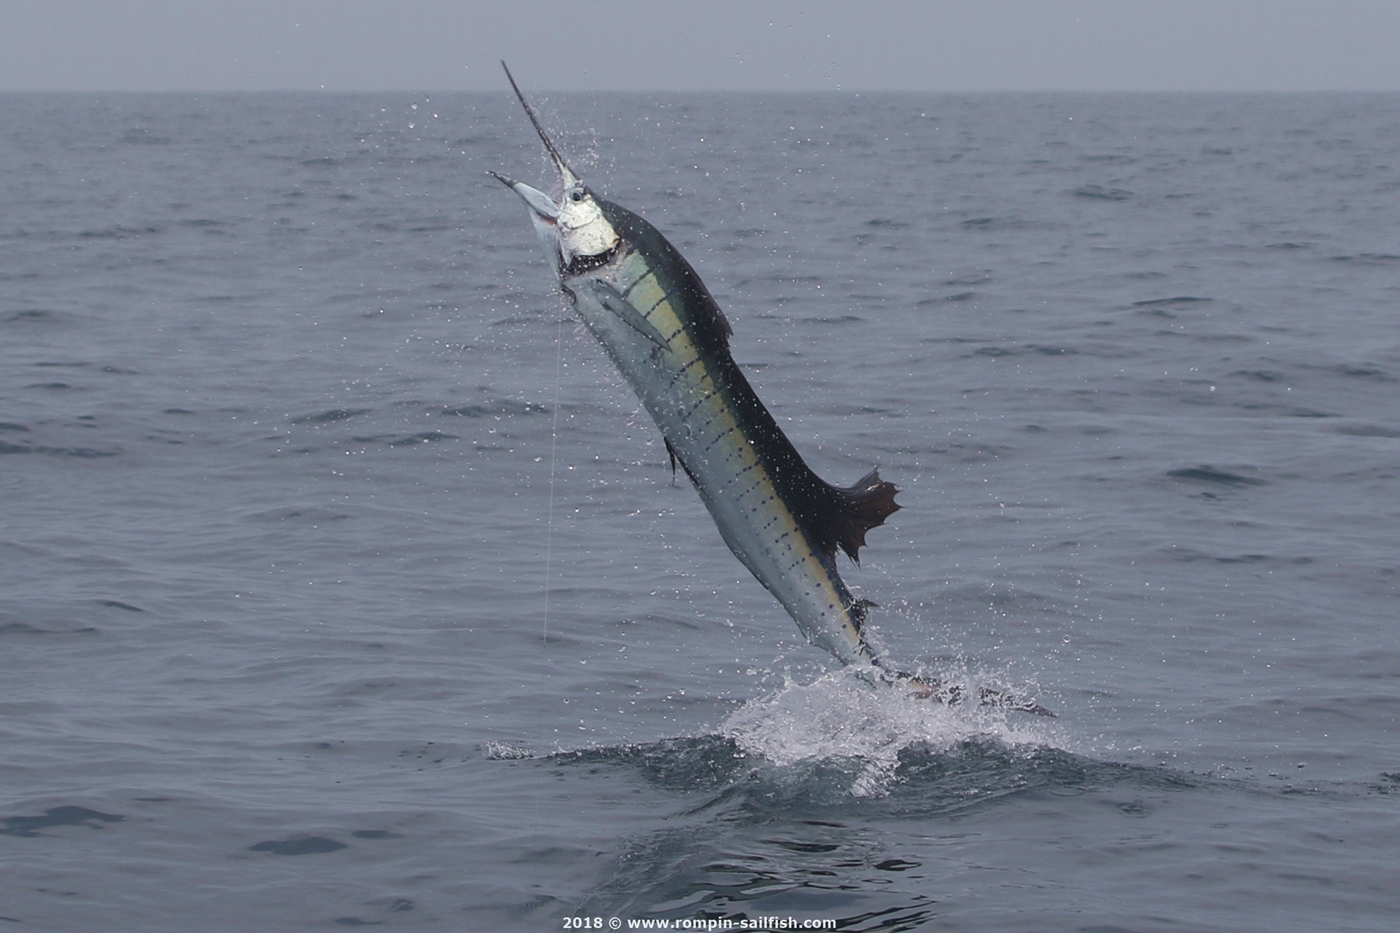 jumping-sailfish-029